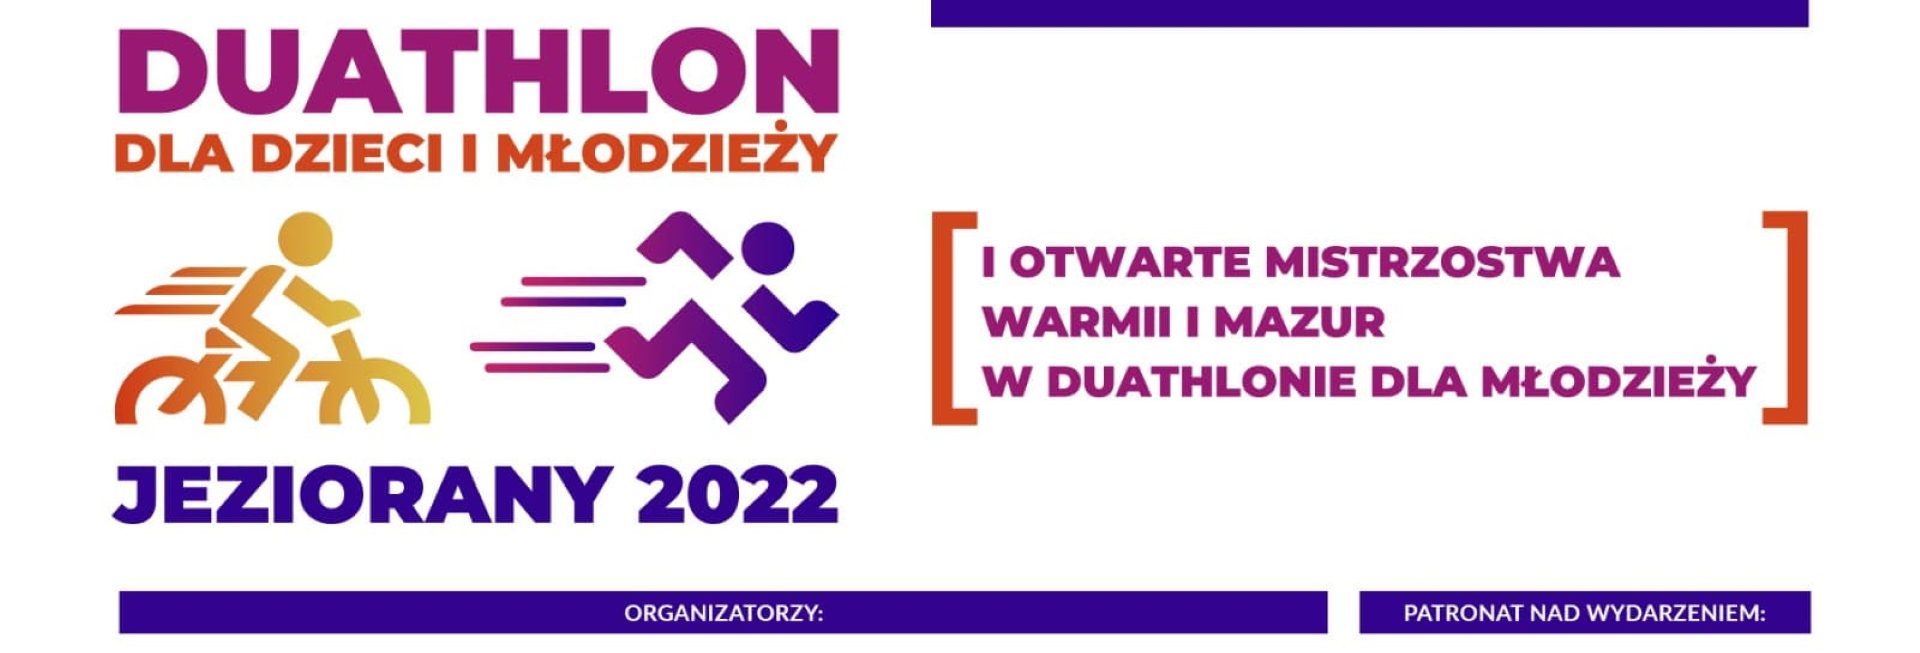 Plakat graficzny zapraszający do Jezioran na 1. edycję Otwartych Mistrzostwa Warmii i Mazur DUATHLON dla dzieci i młodzieży Jeziorany 2022.